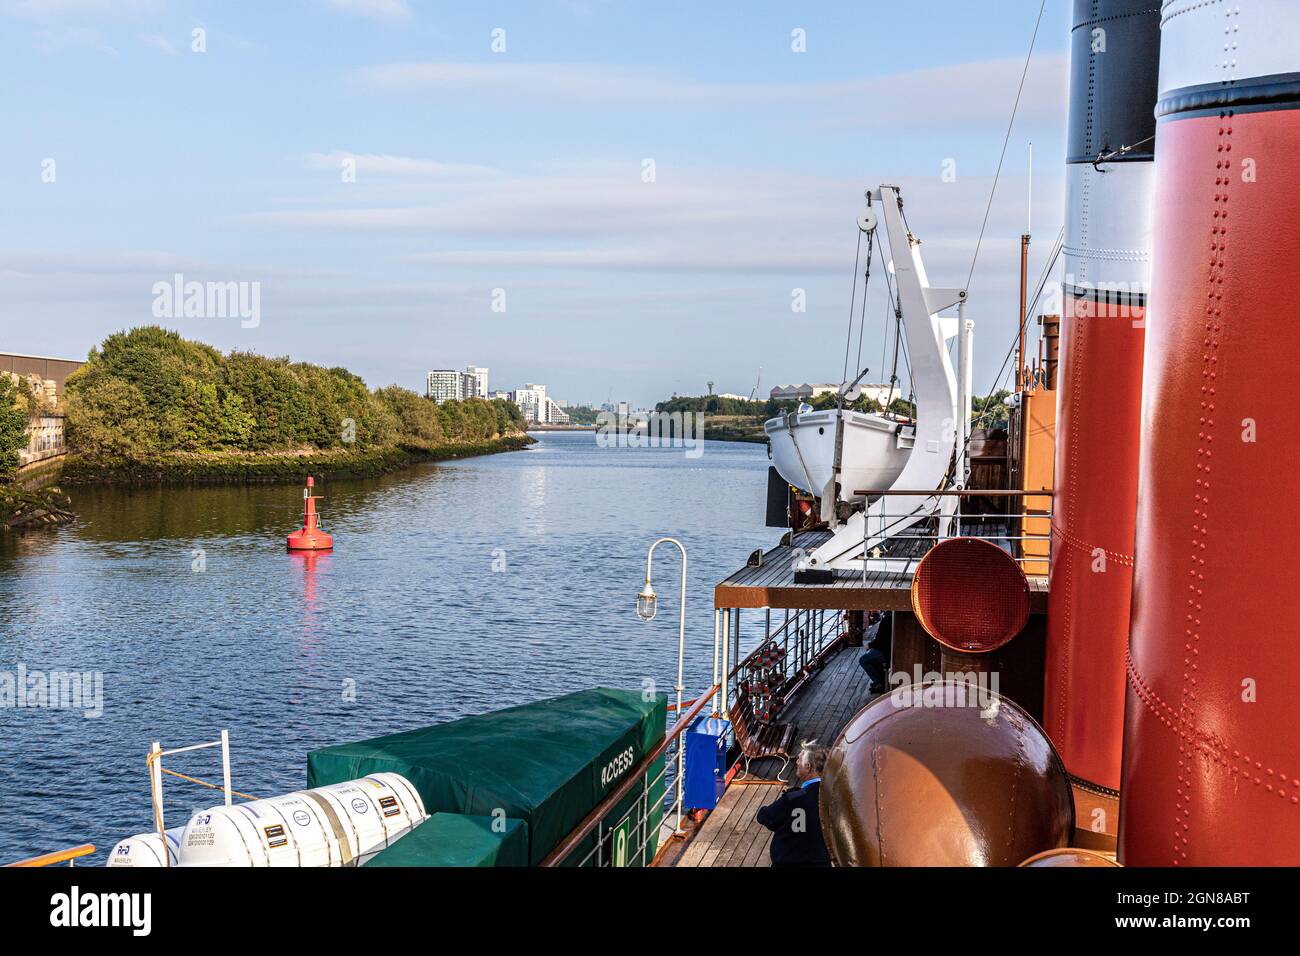 En approchant du quartier de Thornwood sur les rives de la rivière Clyde, vu depuis le bateau à vapeur Waverley, Glasgow, Écosse, Royaume-Uni Banque D'Images